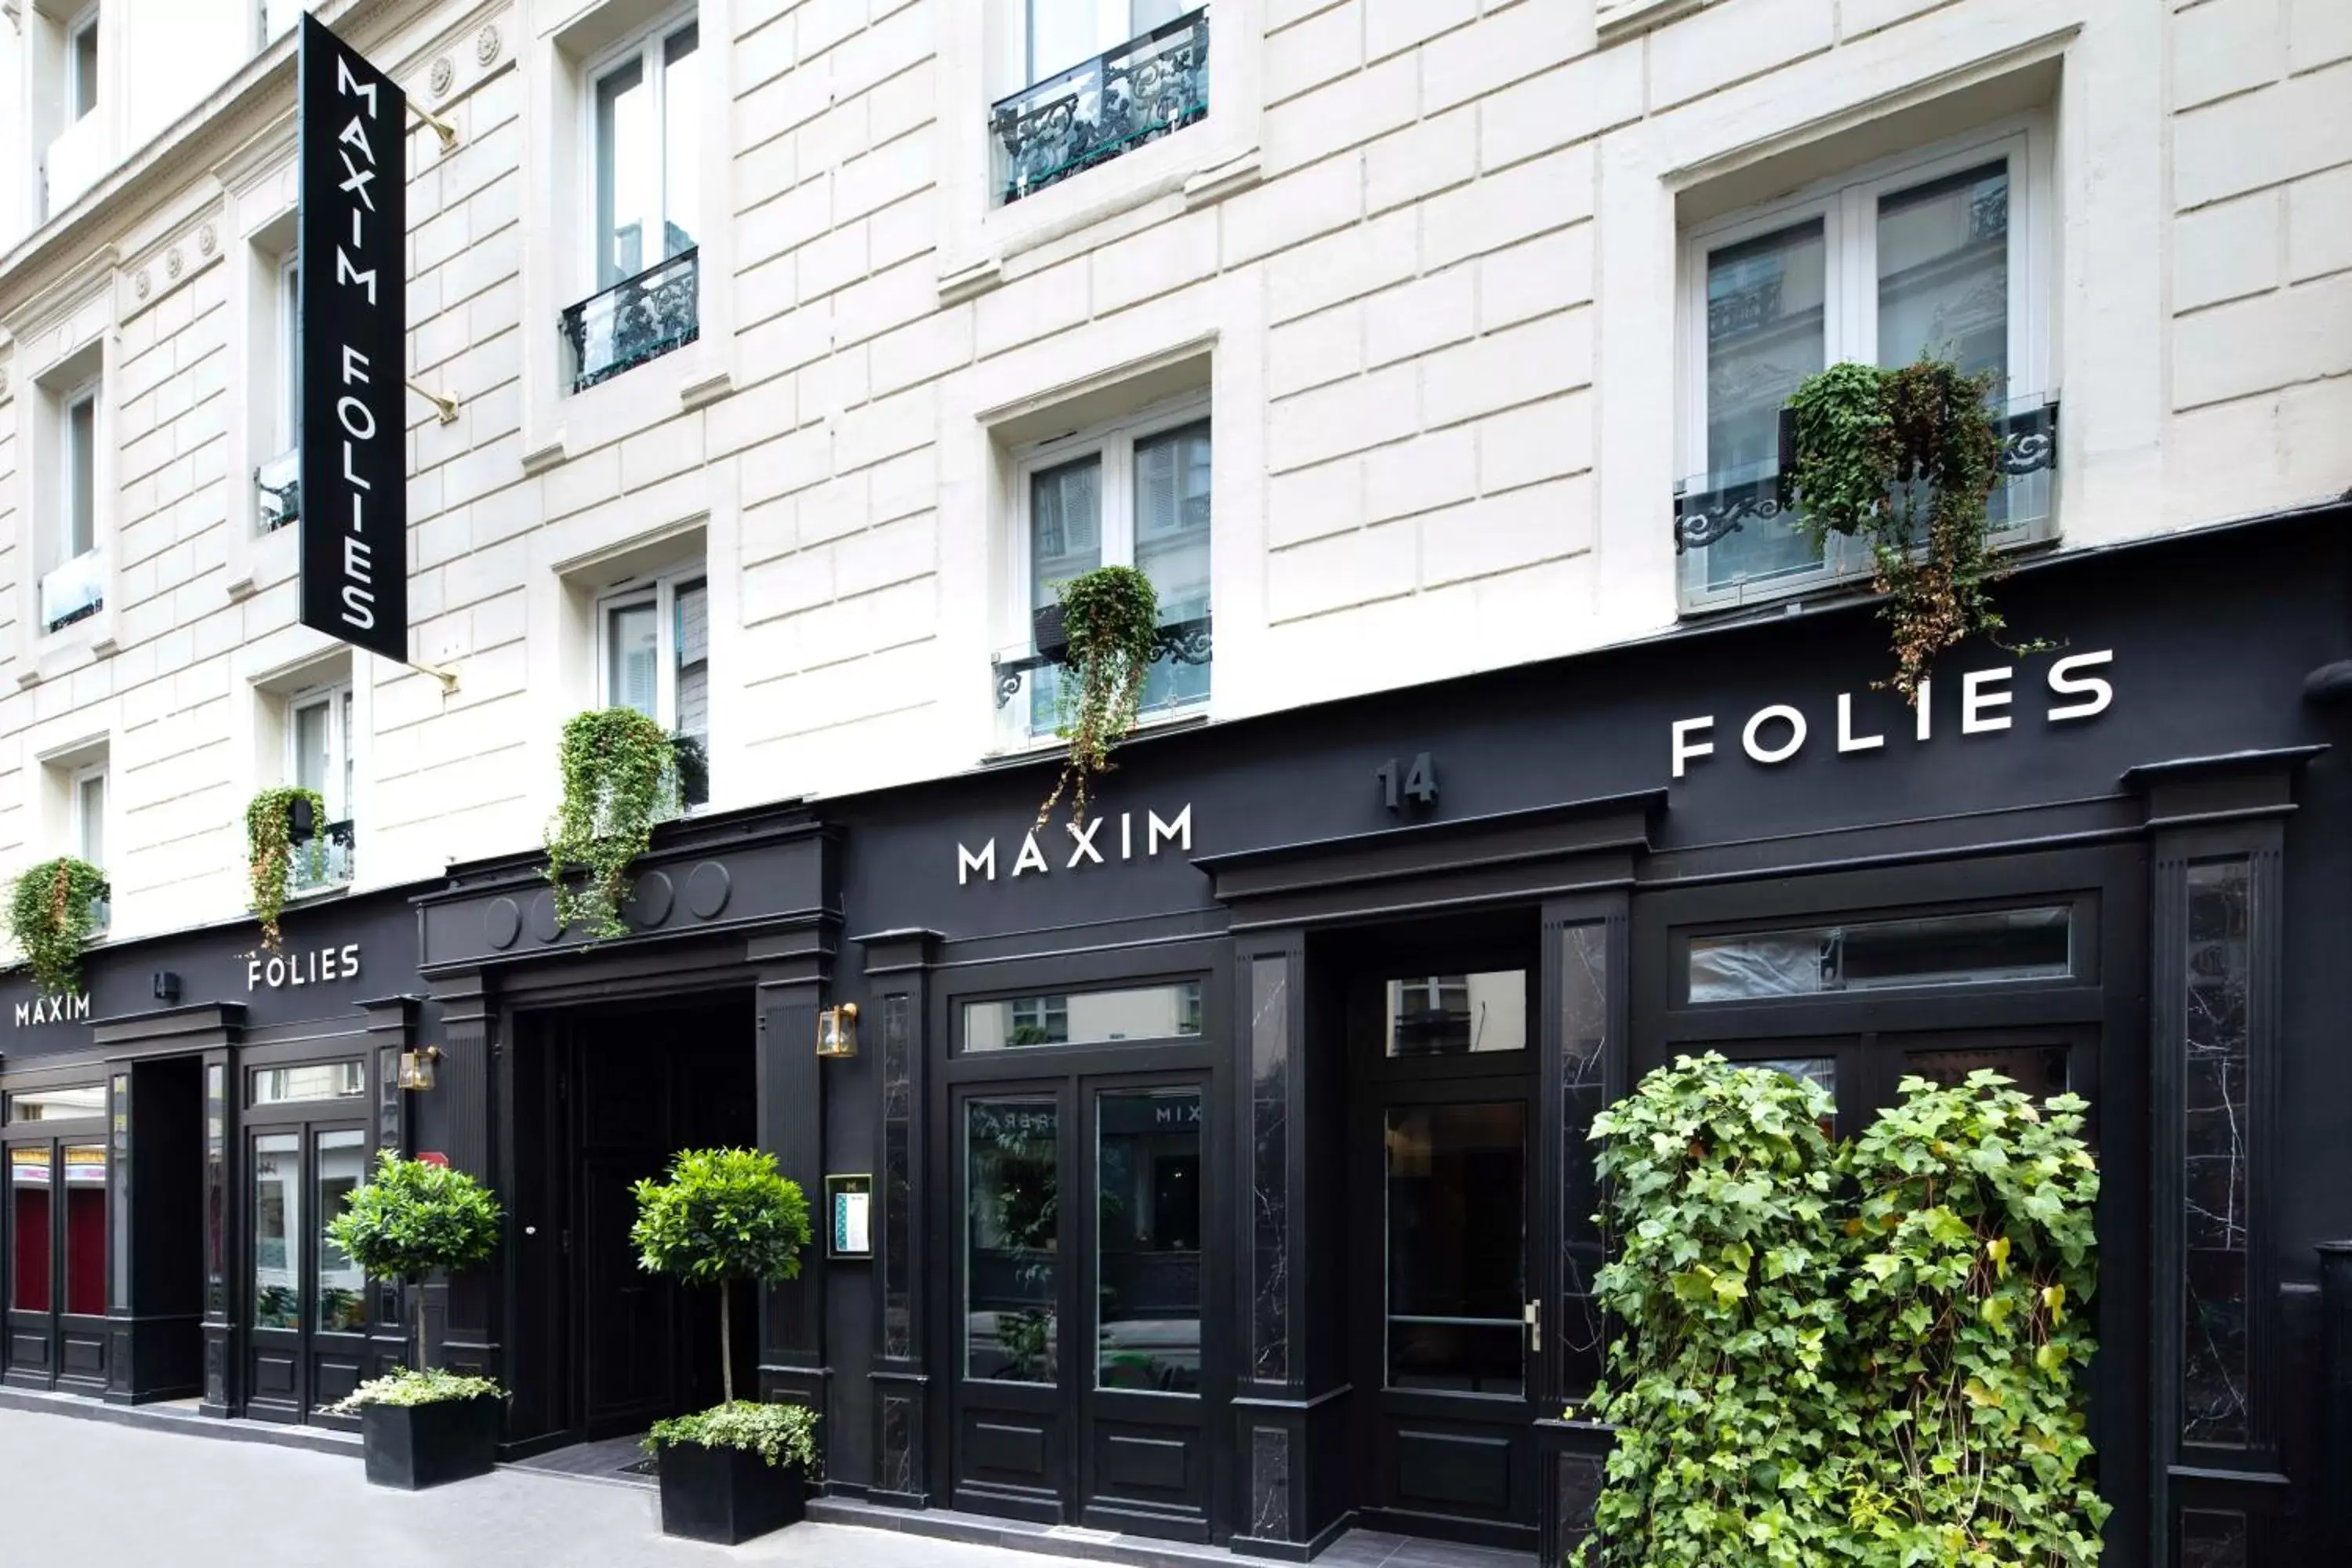 Facade/entrance in Hôtel Maxim Folies